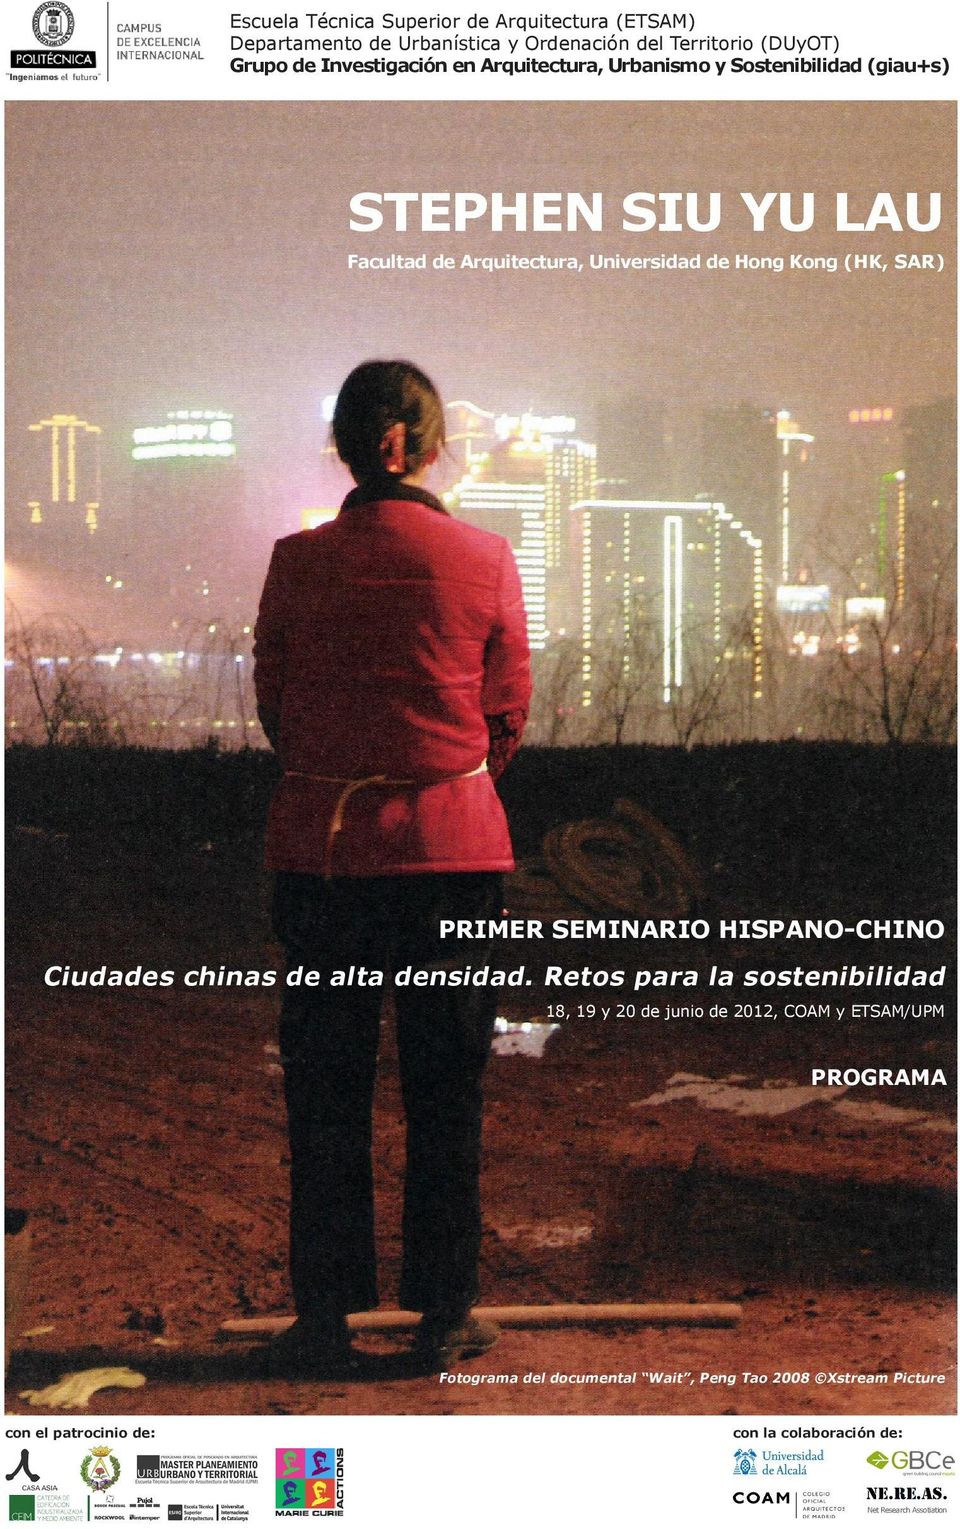 PRIMER SEMINARIO HISPANO-CHINO Ciudades chinas de alta densidad.